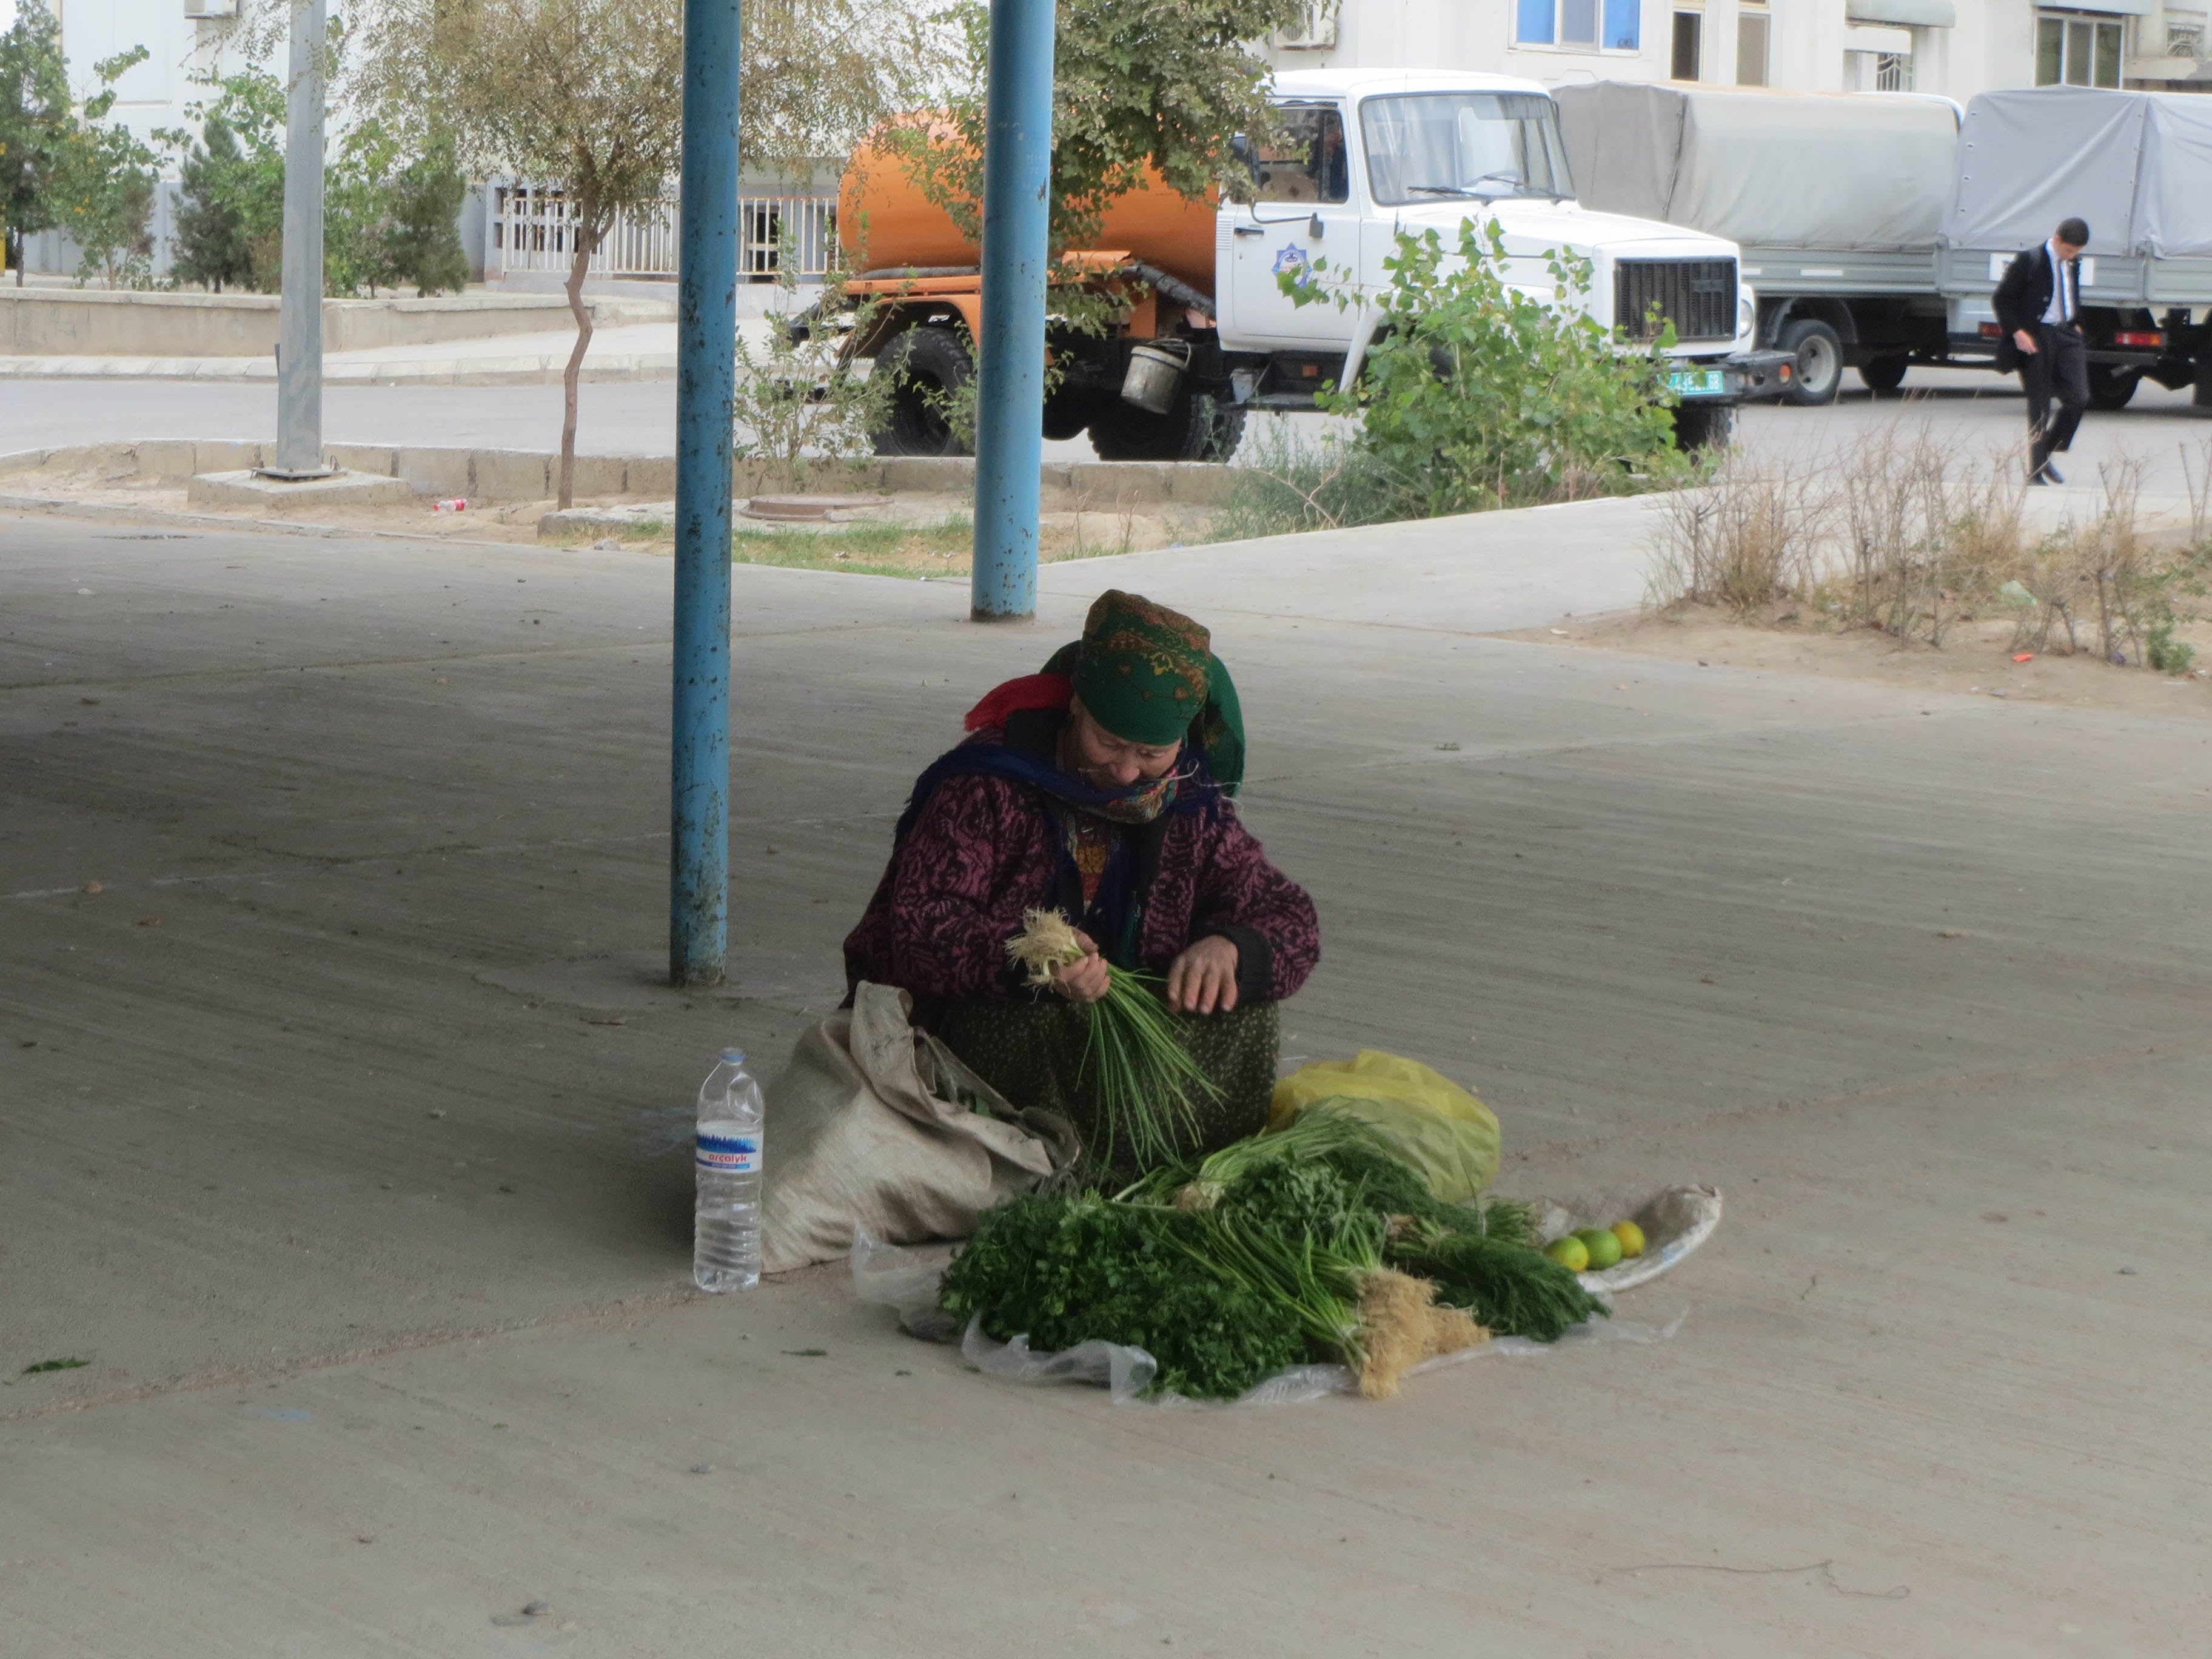 Turkmenistan: Denial, Inaction Worsen Food Crisis